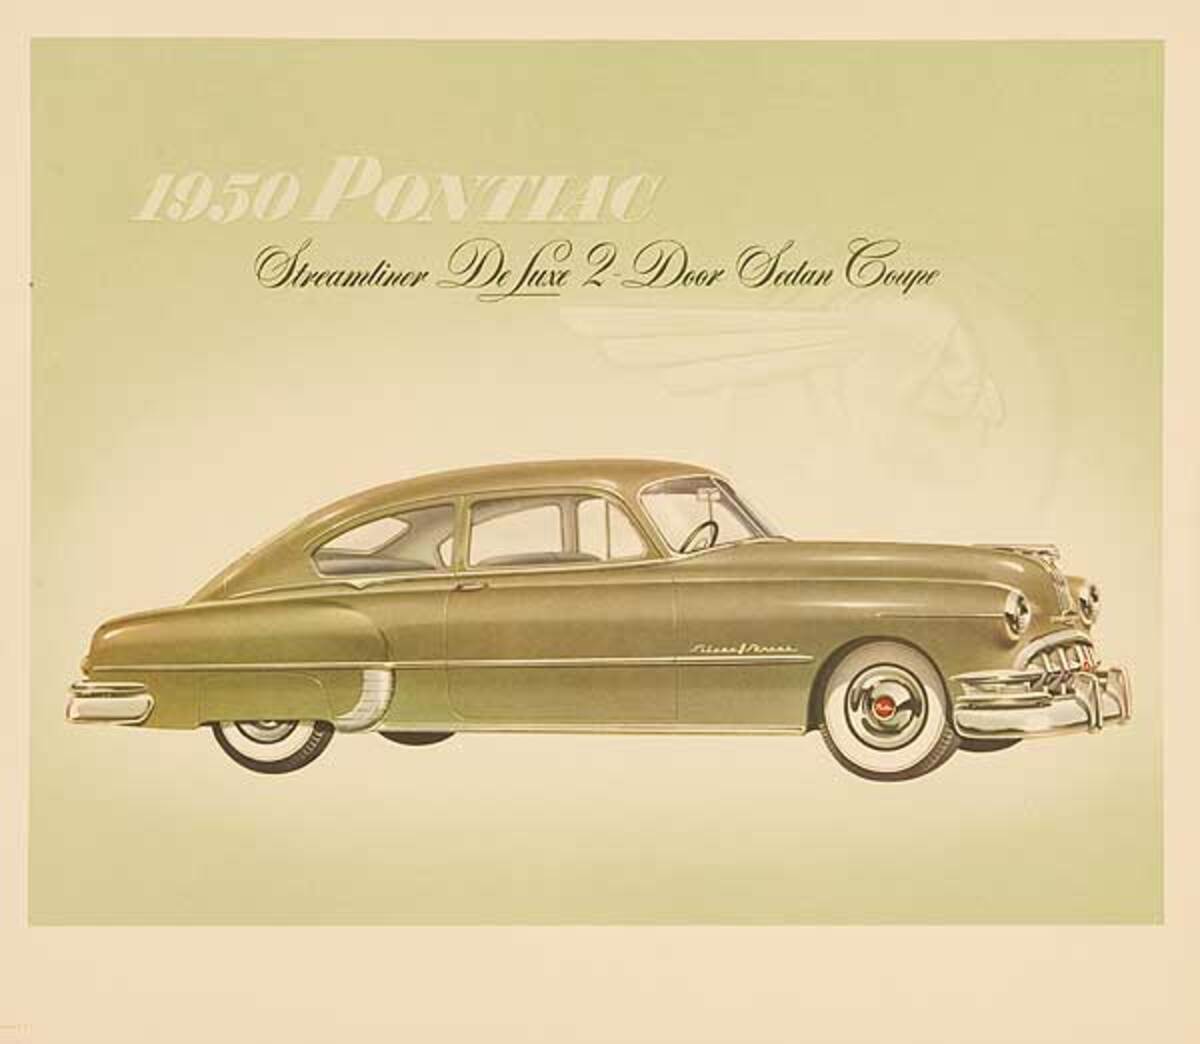 1950 Pontiac Streamliner DeLuxe 2 Door Sedan Coupe Original Showroom Advertising Poster